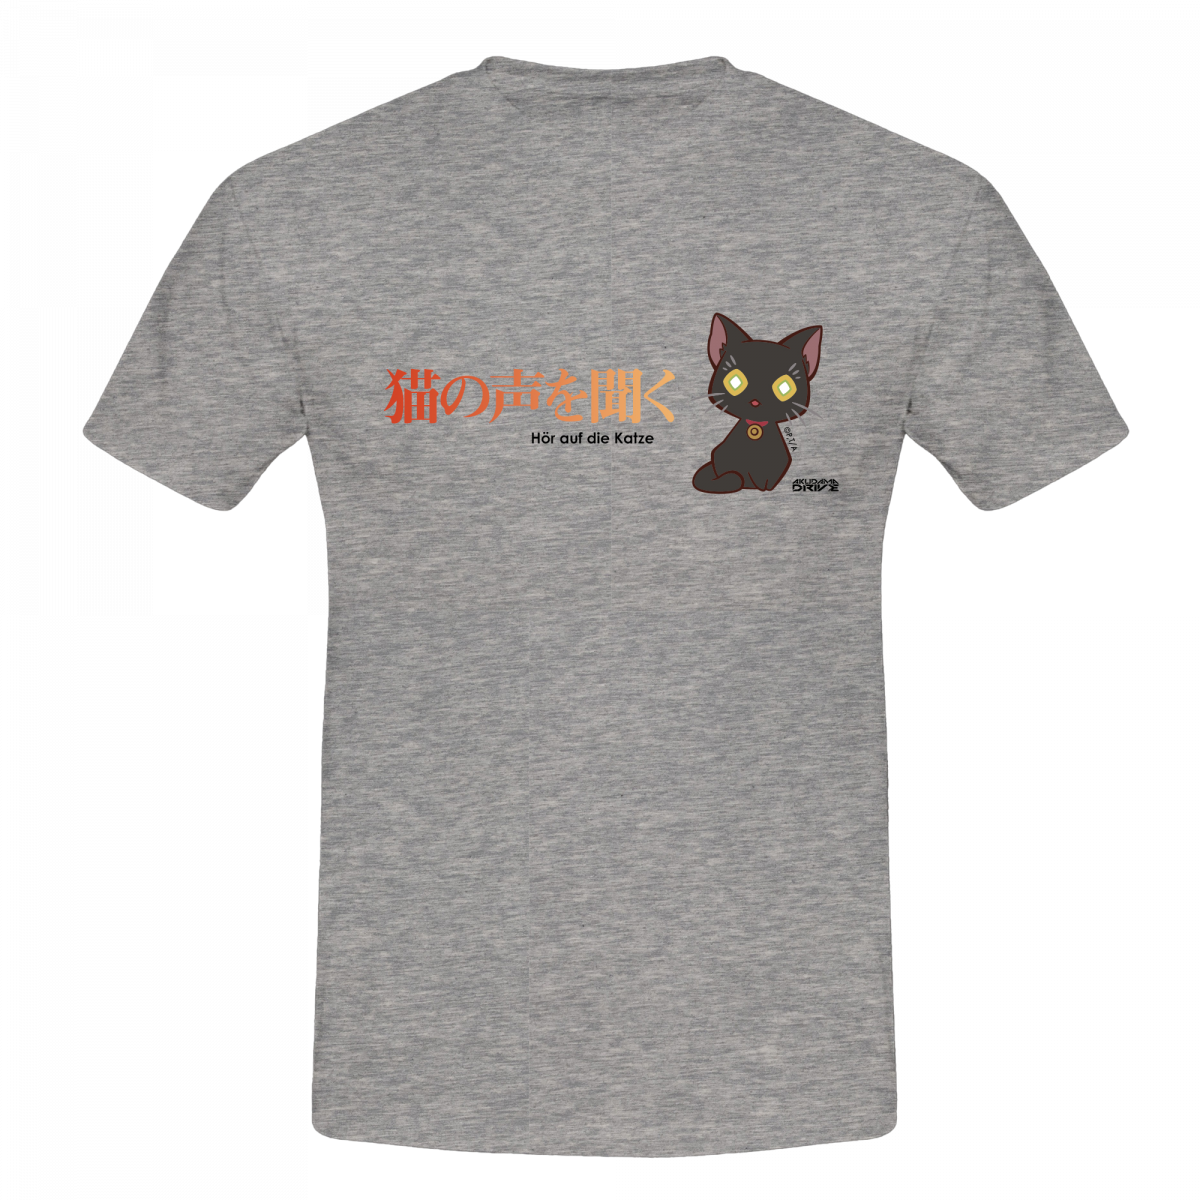 T-Shirt "Hör auf die Katze" - Akudama Drive XL